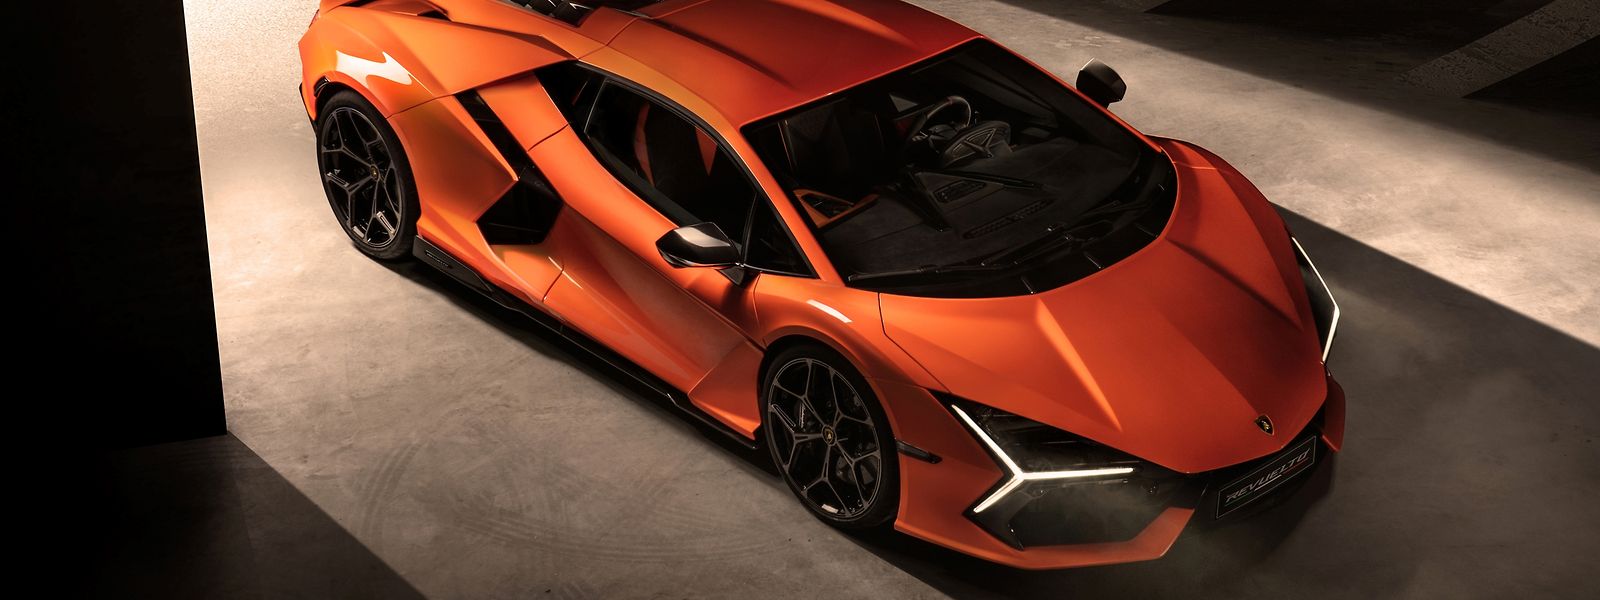 Fahrmaschine mit fantastischen Leistungen: Der Lamborghini Revuelto soll in 2,5 Sekunden von null auf 100 schießen und bis zu 350 km/h schnell werden.